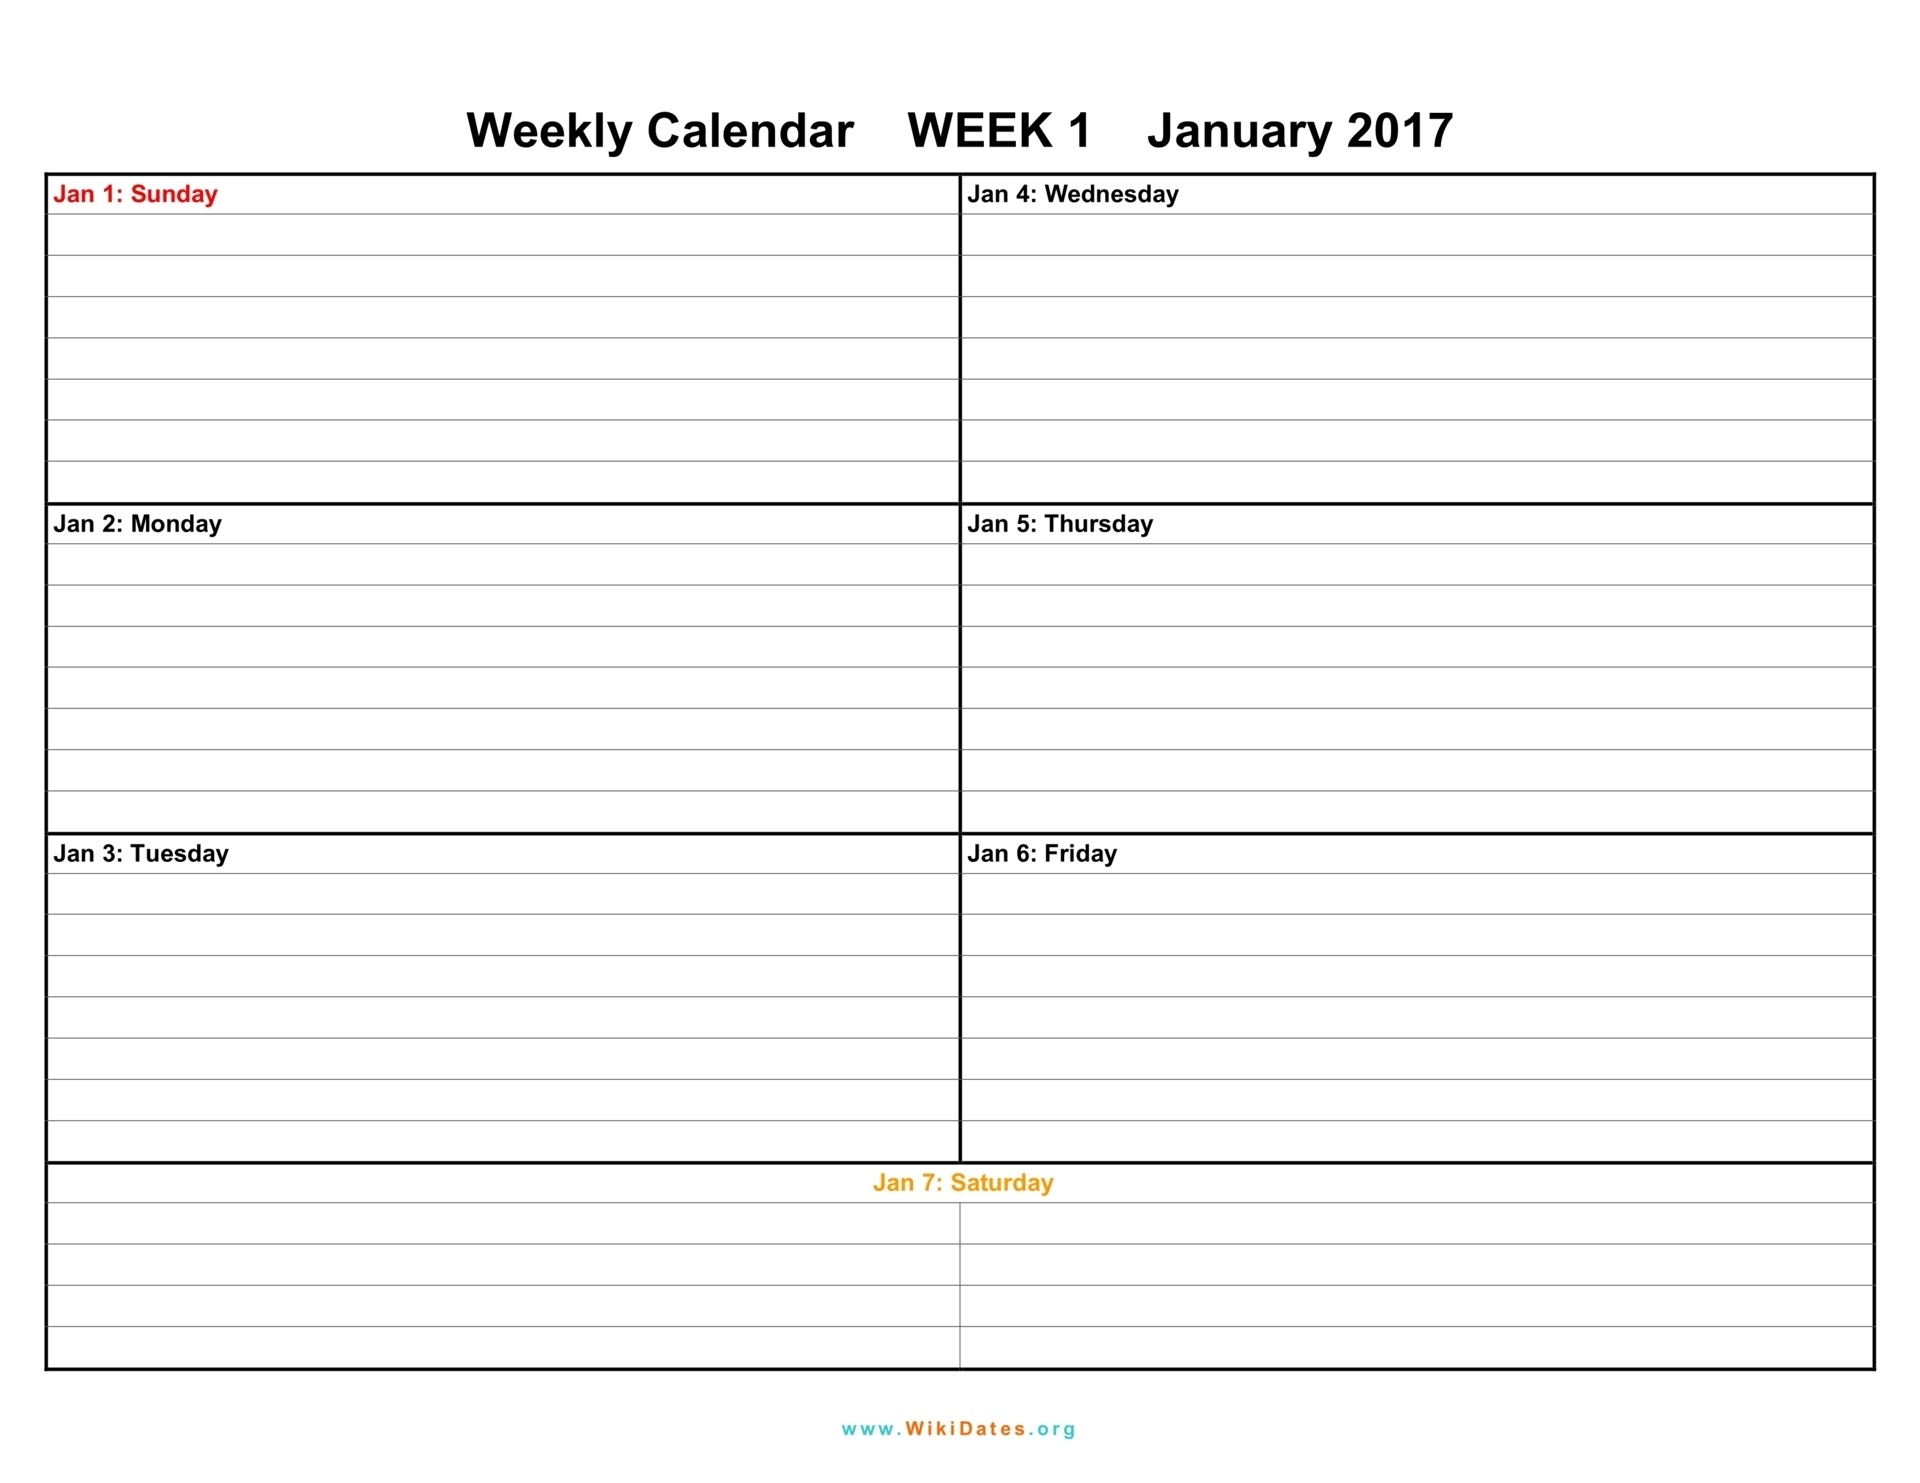 Weekly Calendar - Download Weekly Calendar 2017 And 2018| Wikidates  1 Week Vacation Calendar Printable